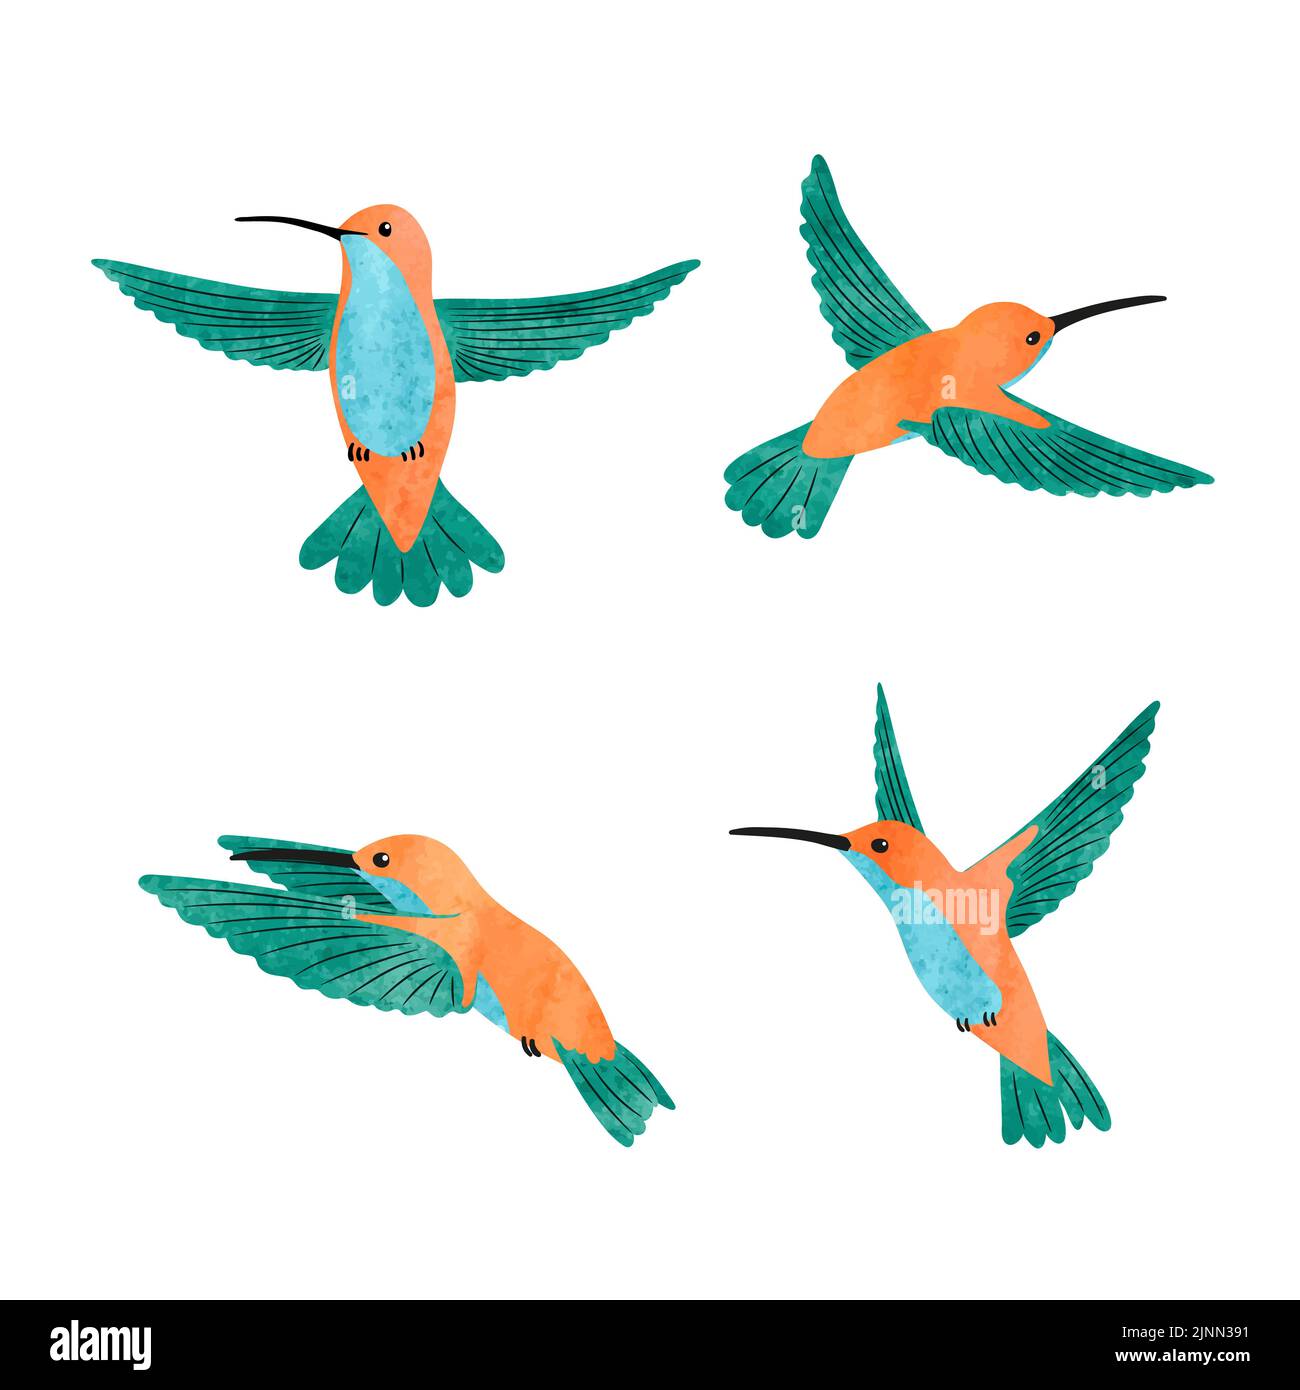 Carino colibrì set. Illustrazione vettoriale di acquerello di piccoli uccelli tropicali. Illustrazione Vettoriale